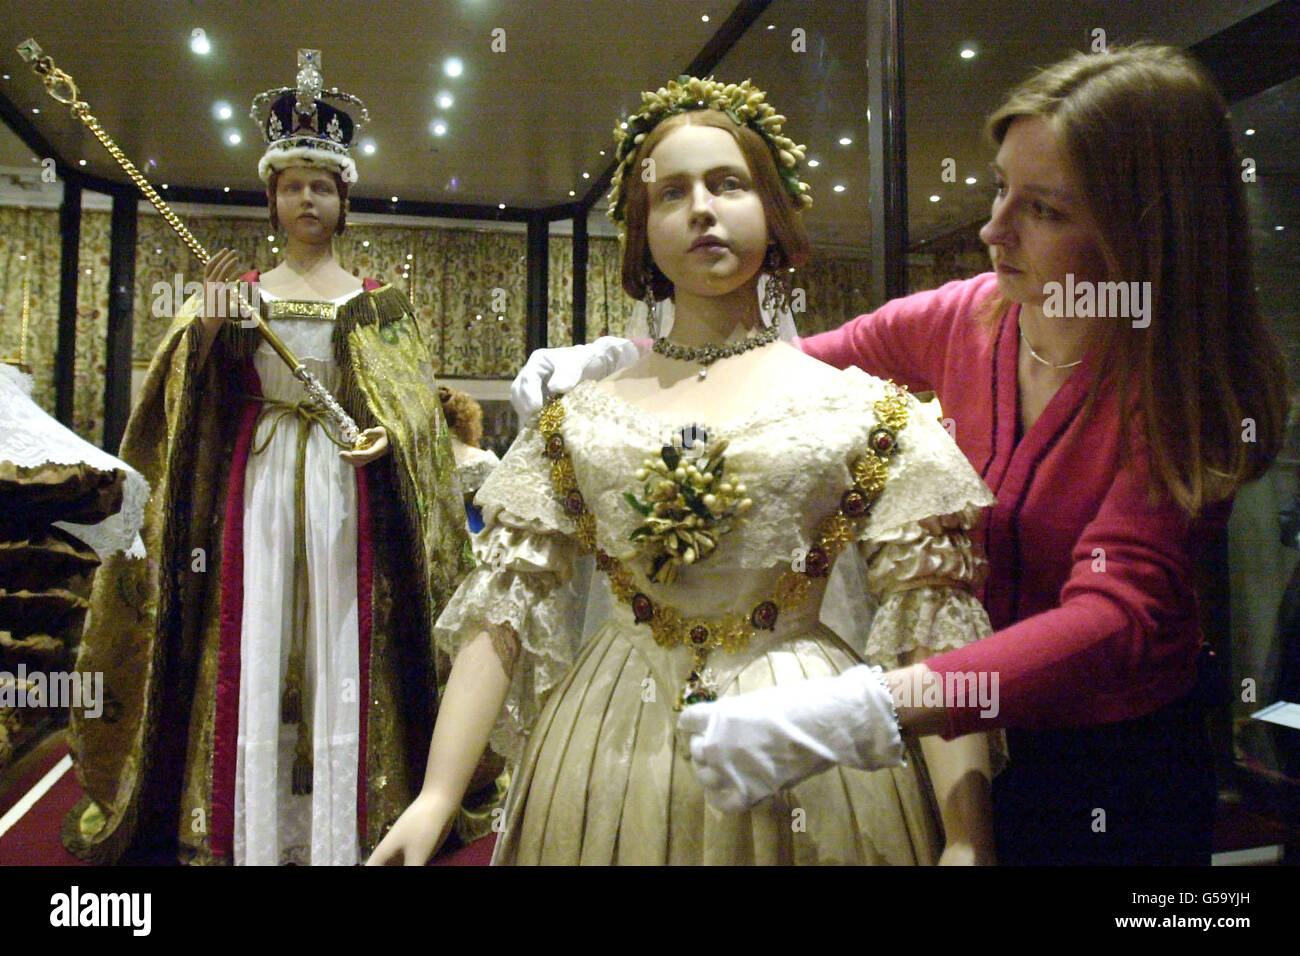 Buy > queen victoria coronation dress > in stock